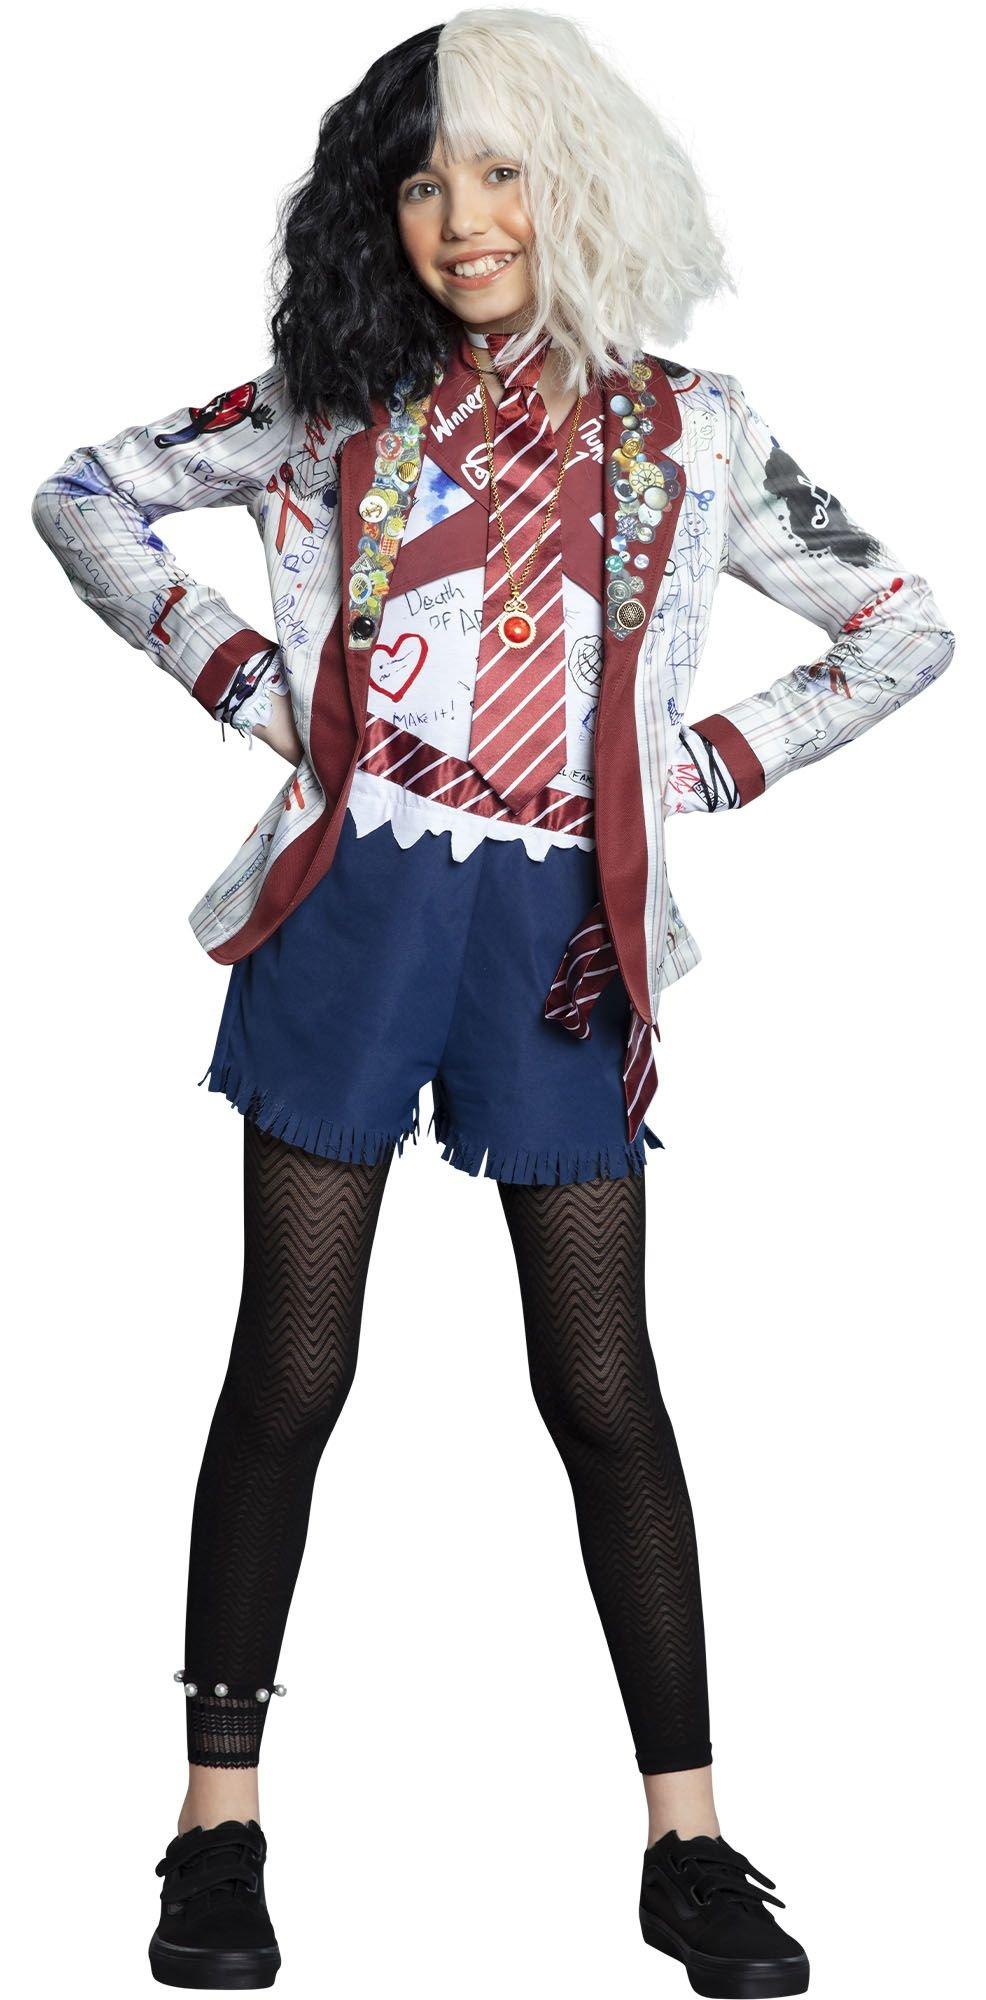 Estella School Uniform Costume Accessory Kit for Kids - Disney Cruella ...